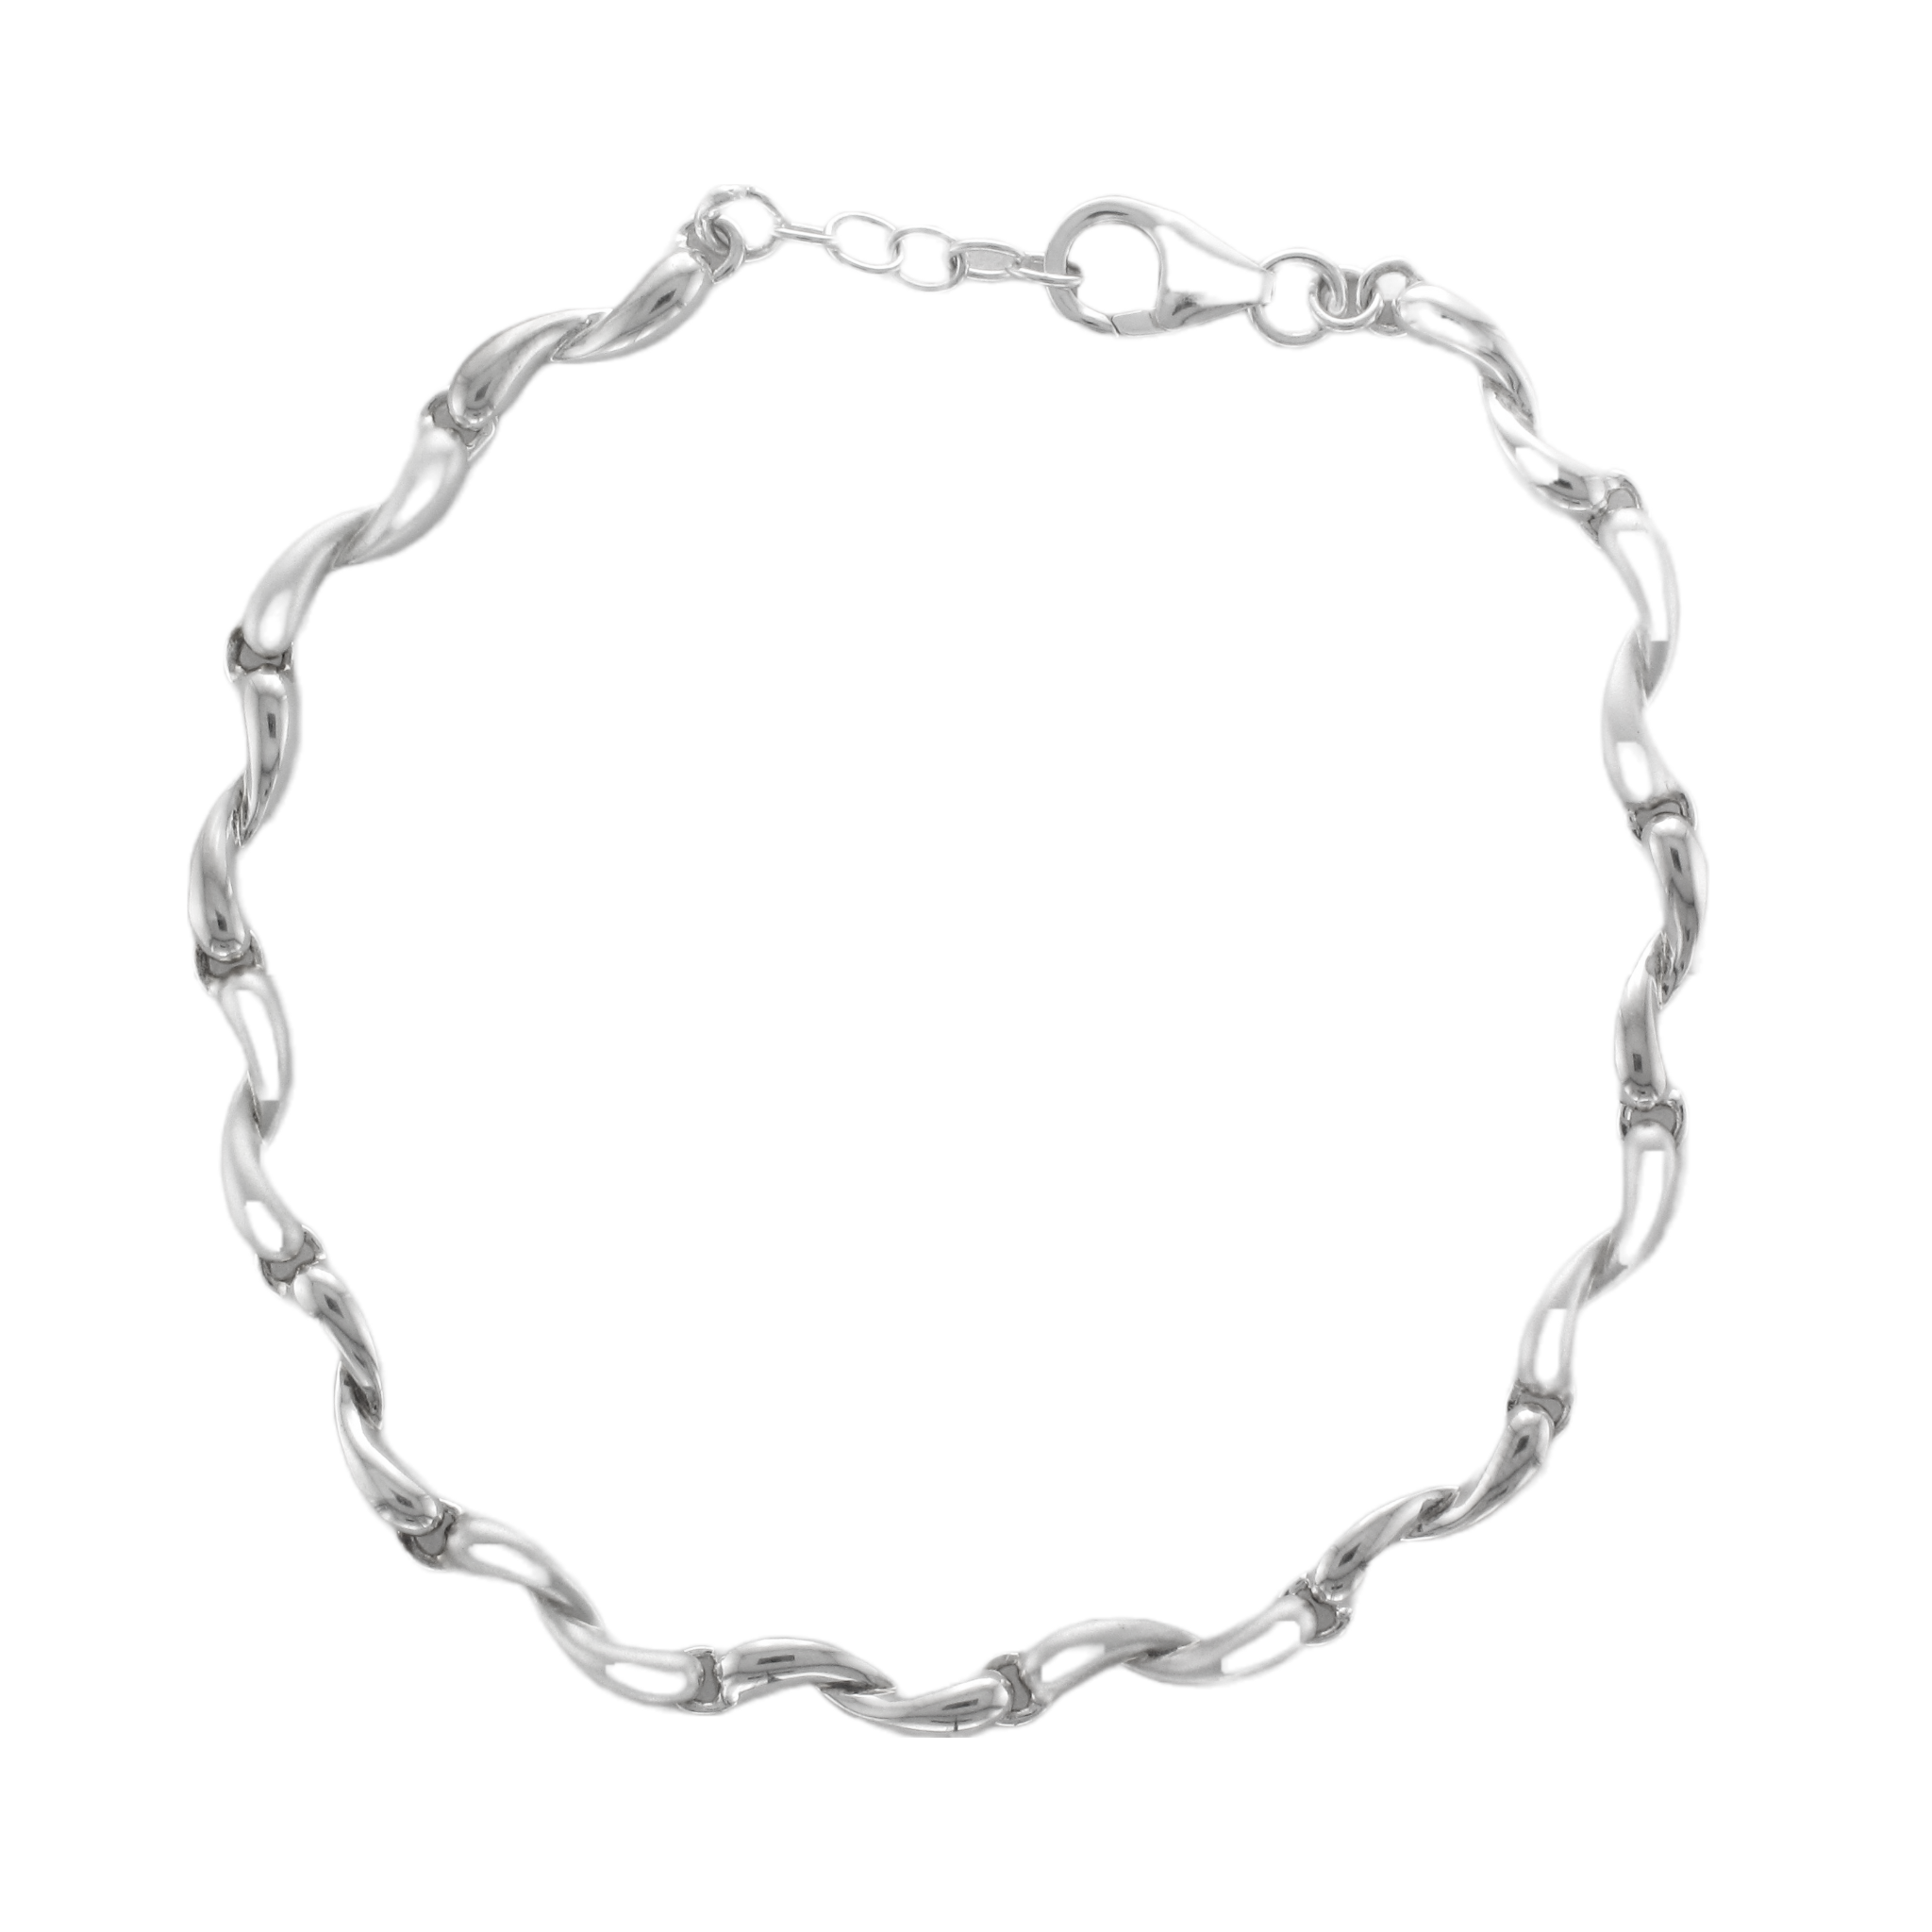 Silver Satin/Polished Fine Twisted Curve Link Bracelet